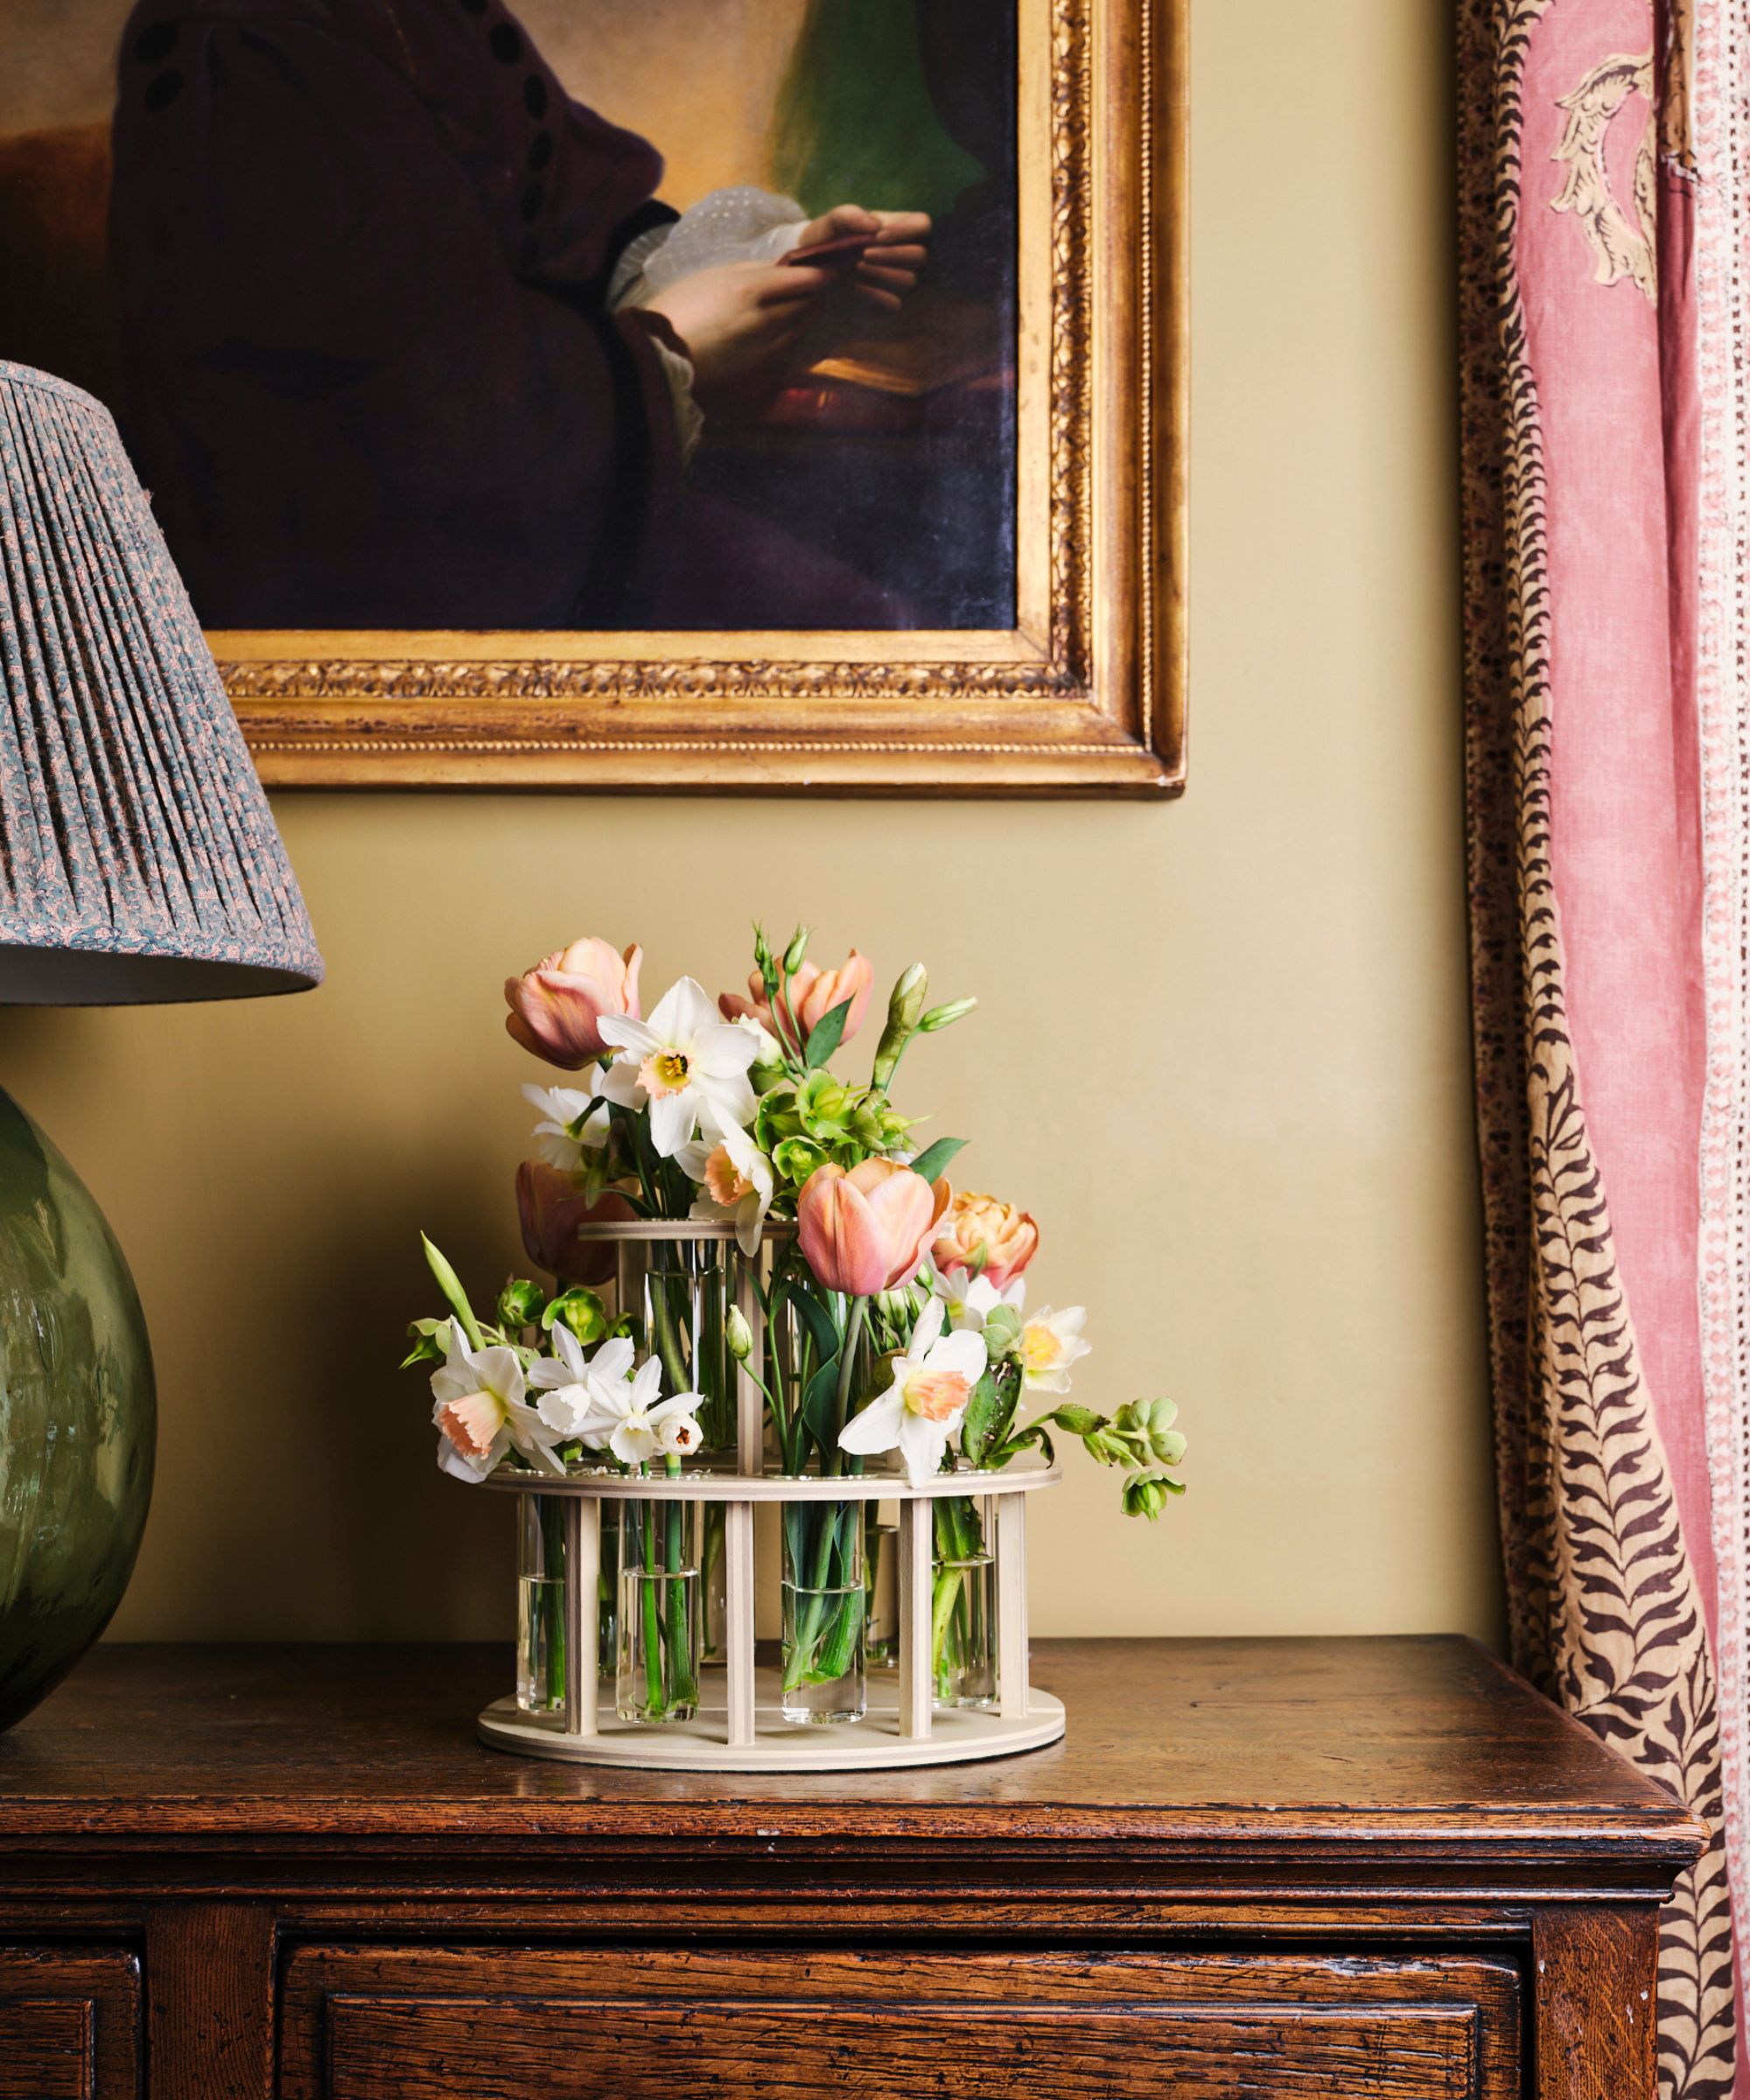 spring florals on an antique dresser for easter spring decor